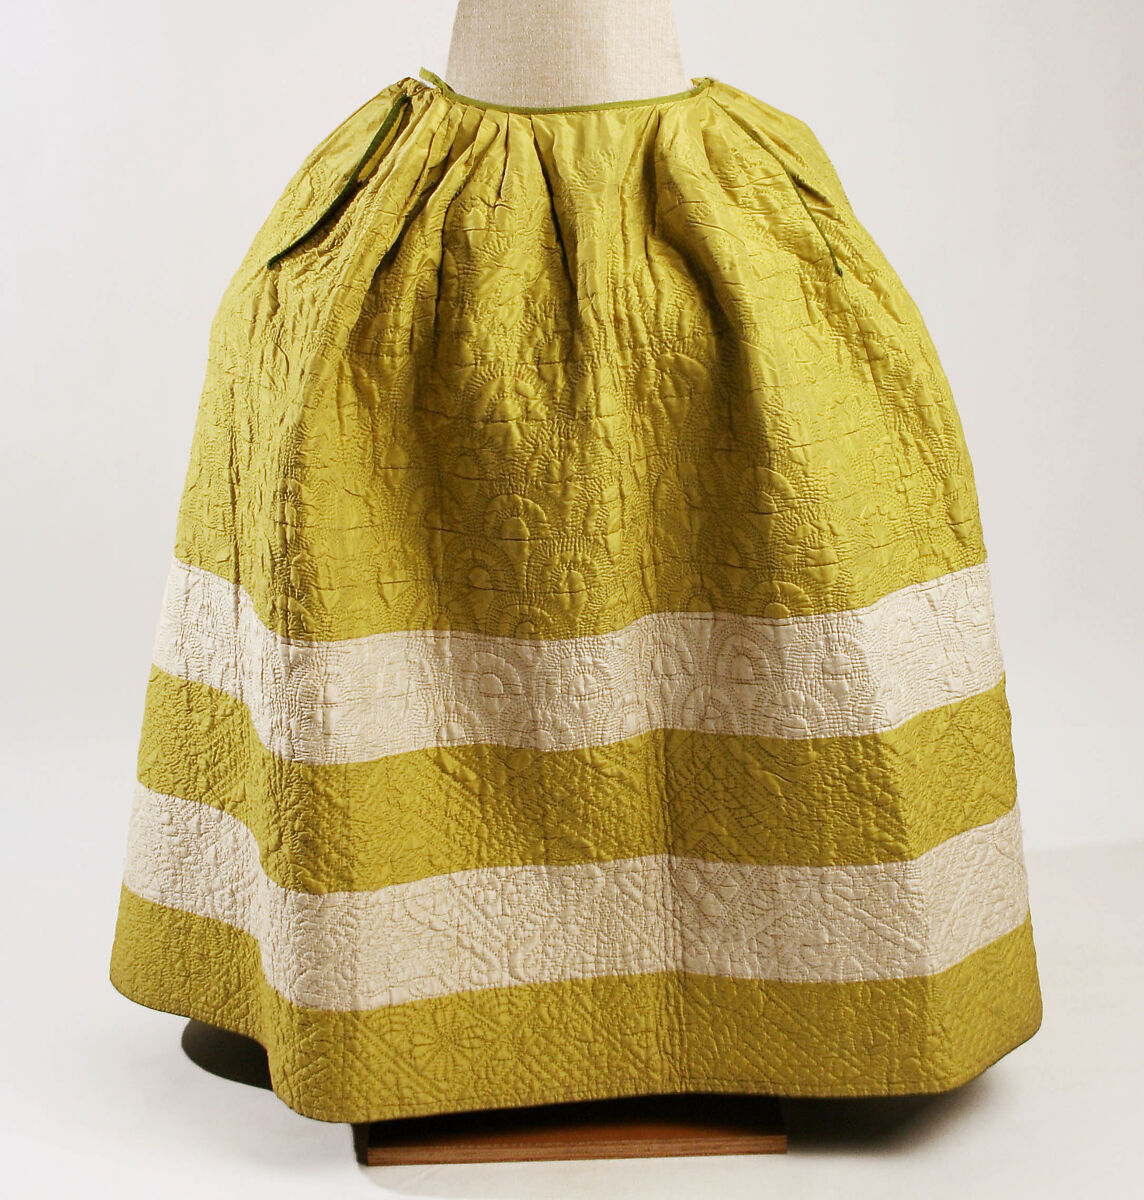 Petticoat, silk, British 